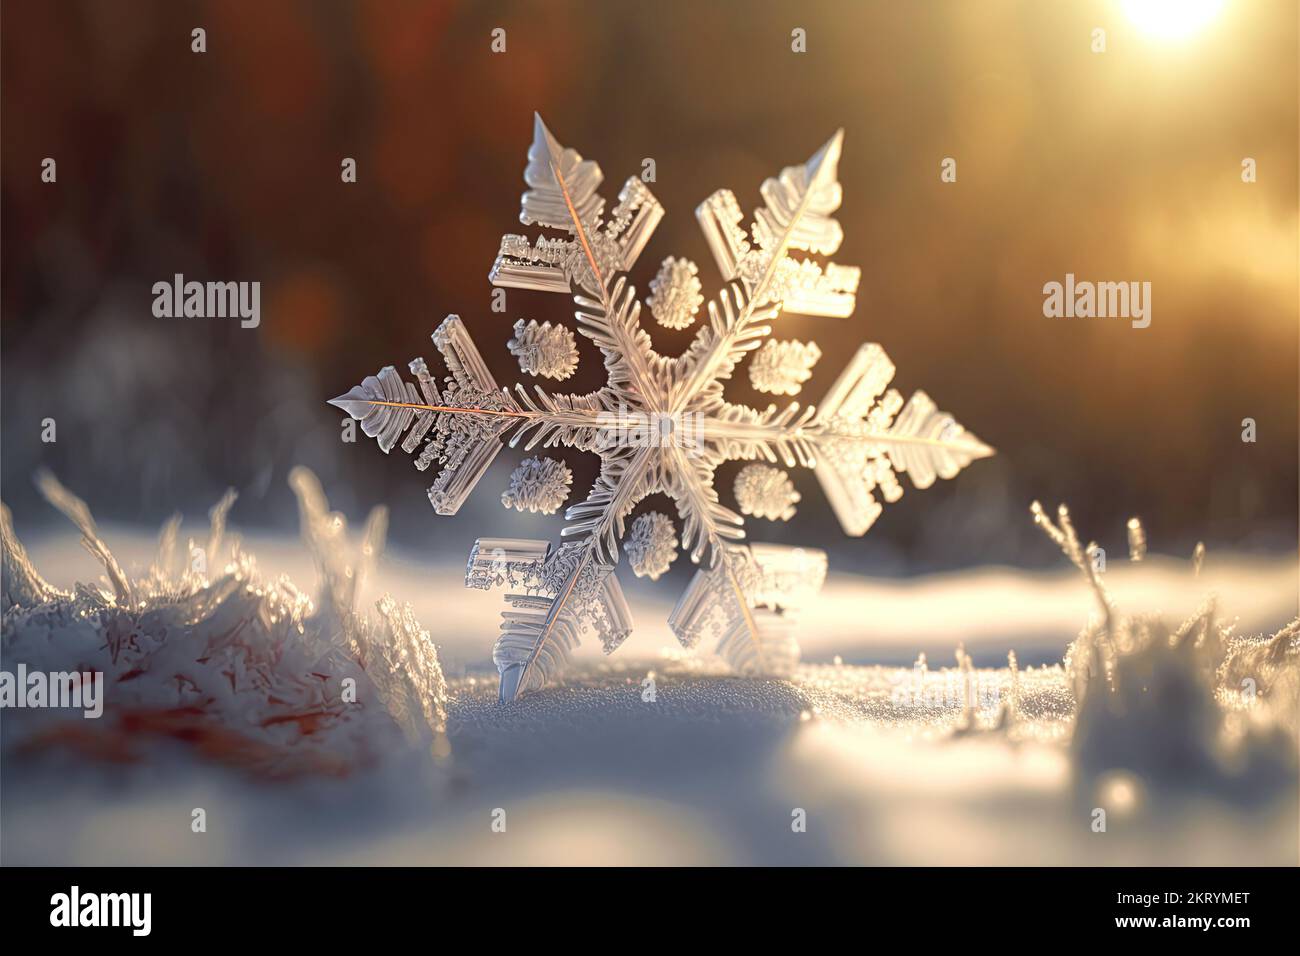 Eine extreme Nahaufnahme einer Schneeflocke in einer verschneiten Winterumgebung bei Sonnenuntergang ist abgebildet. Weihnachtszeit mit 3D-Hintergrund. Stockfoto